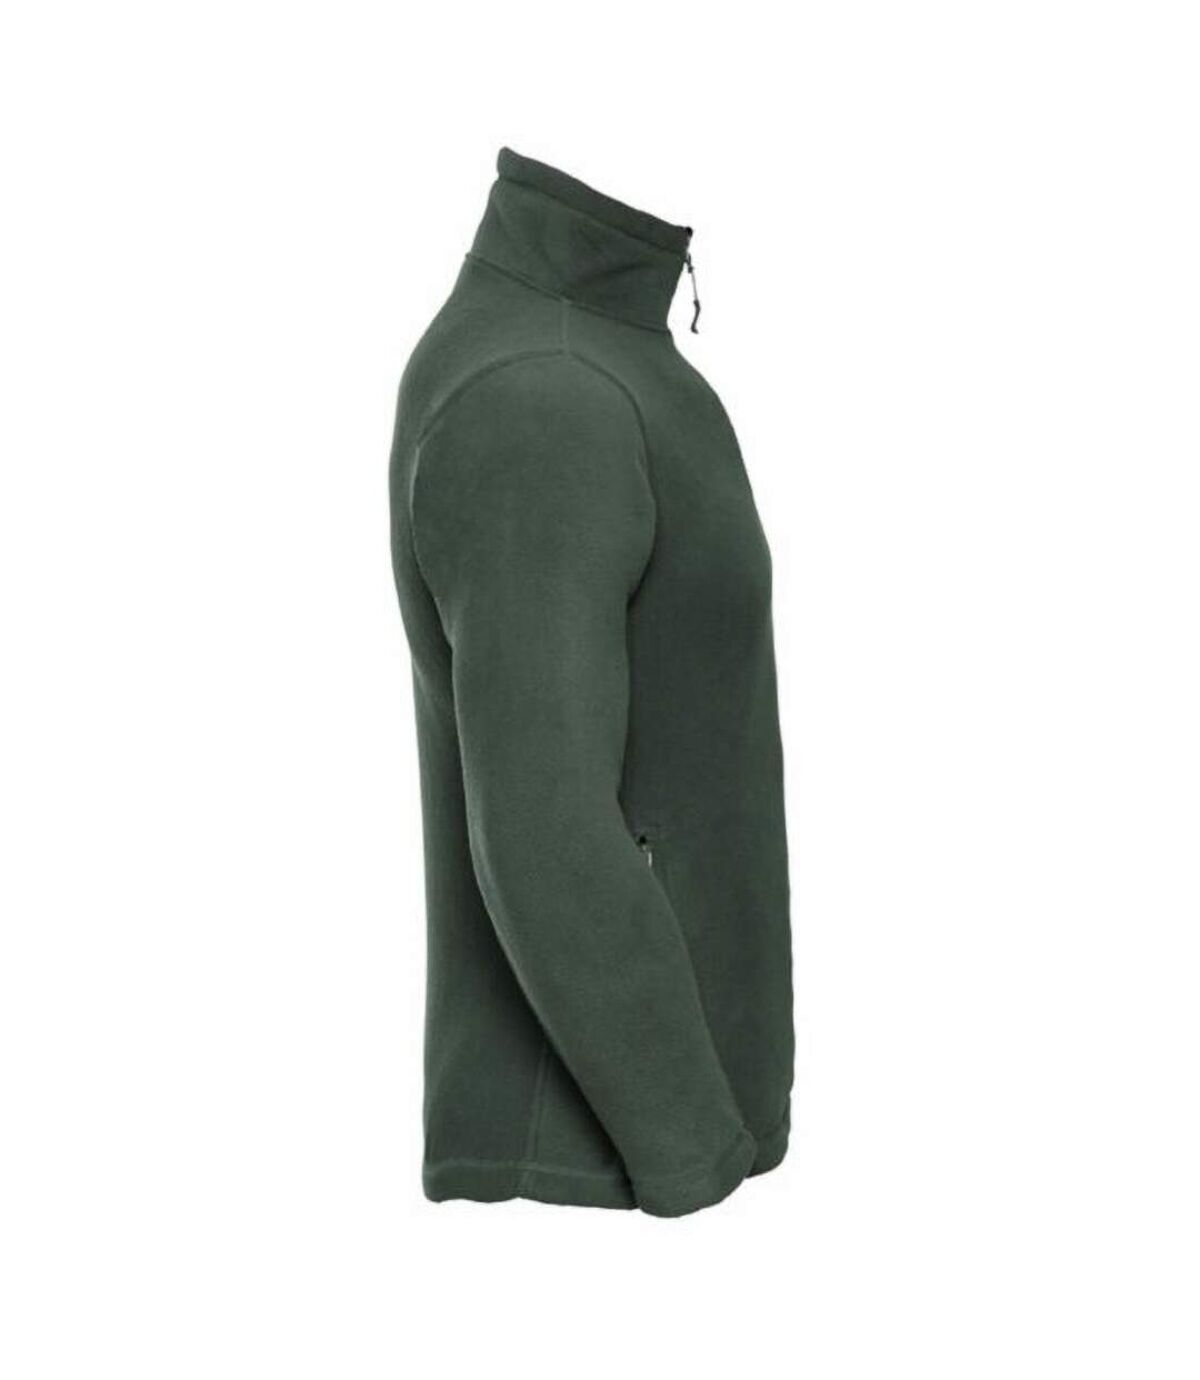 Russell Mens 1/4 Zip Outdoor Fleece Top (Bottle Green) - UTBC1438